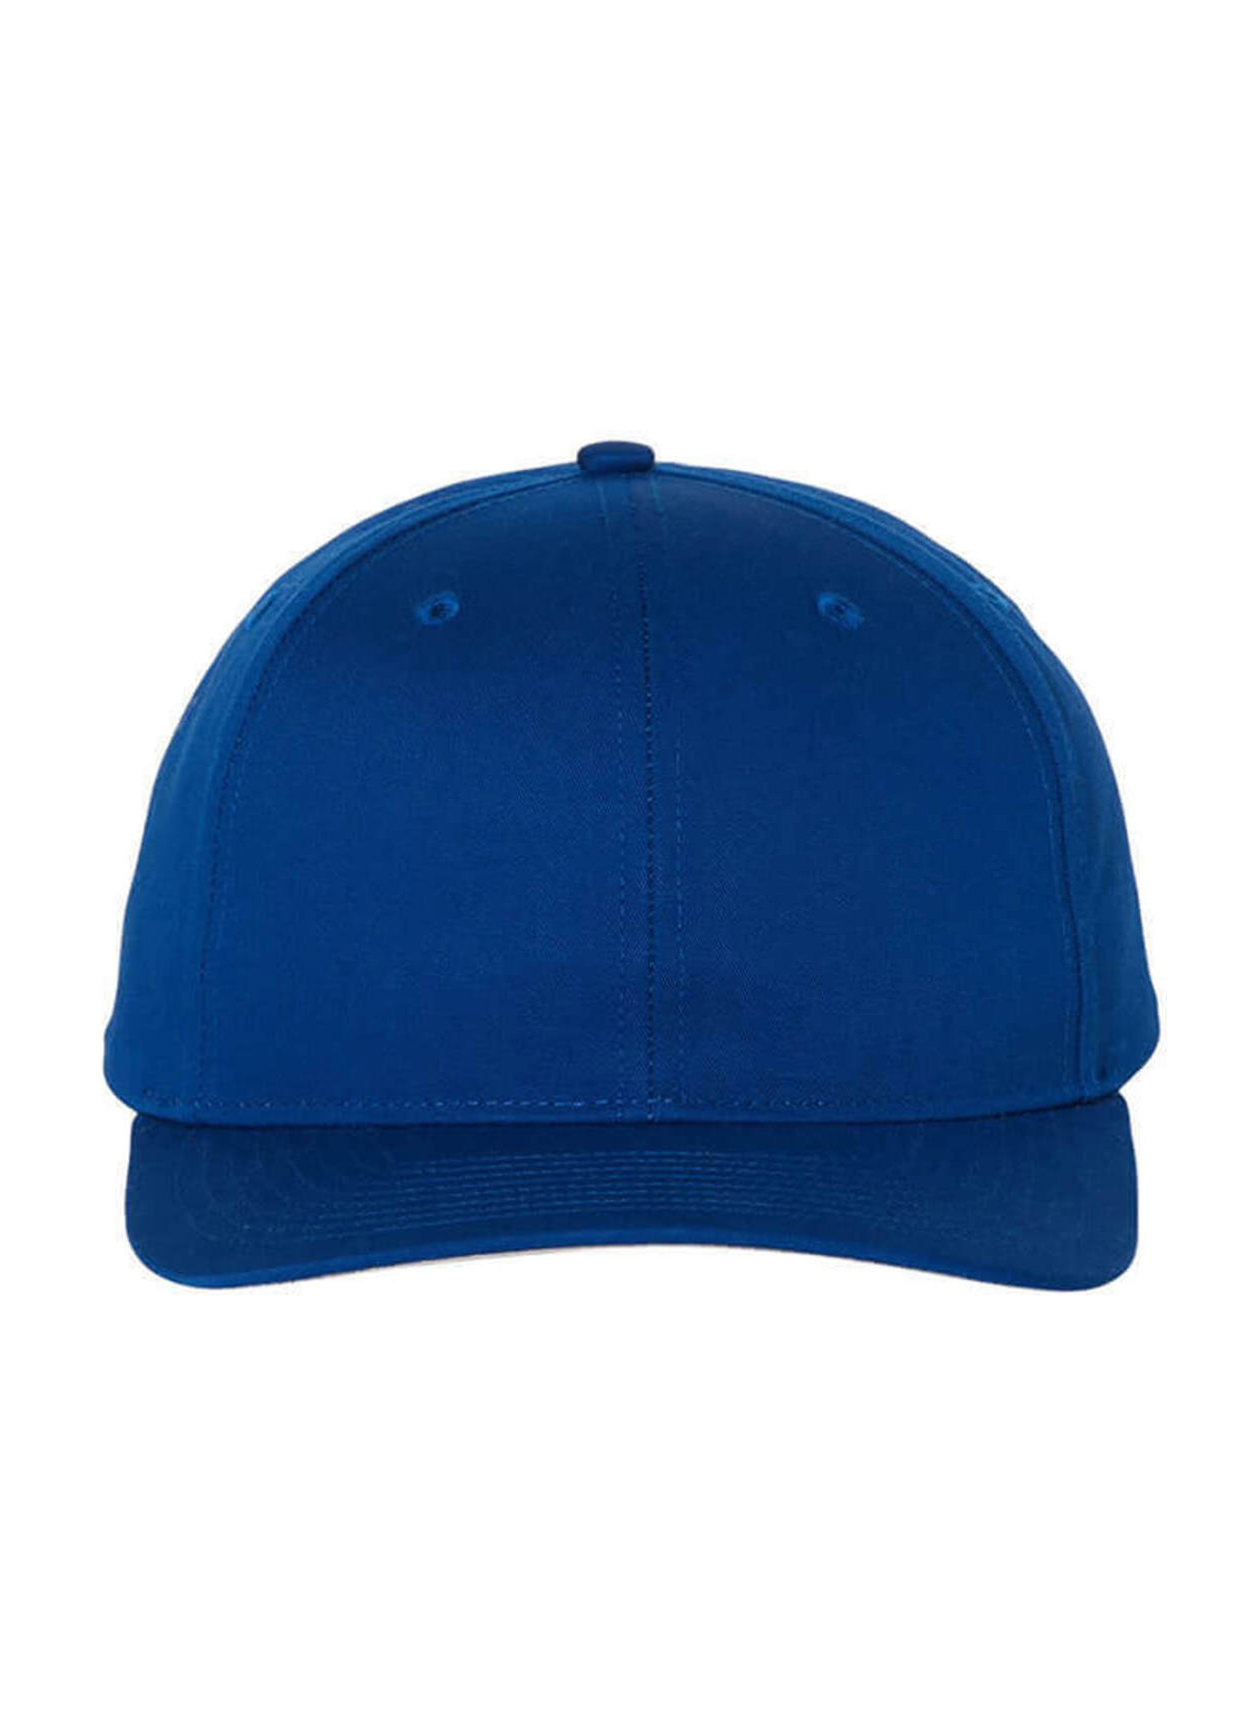 Richardson Pro Twill Snapback Hat Royal | Richardson